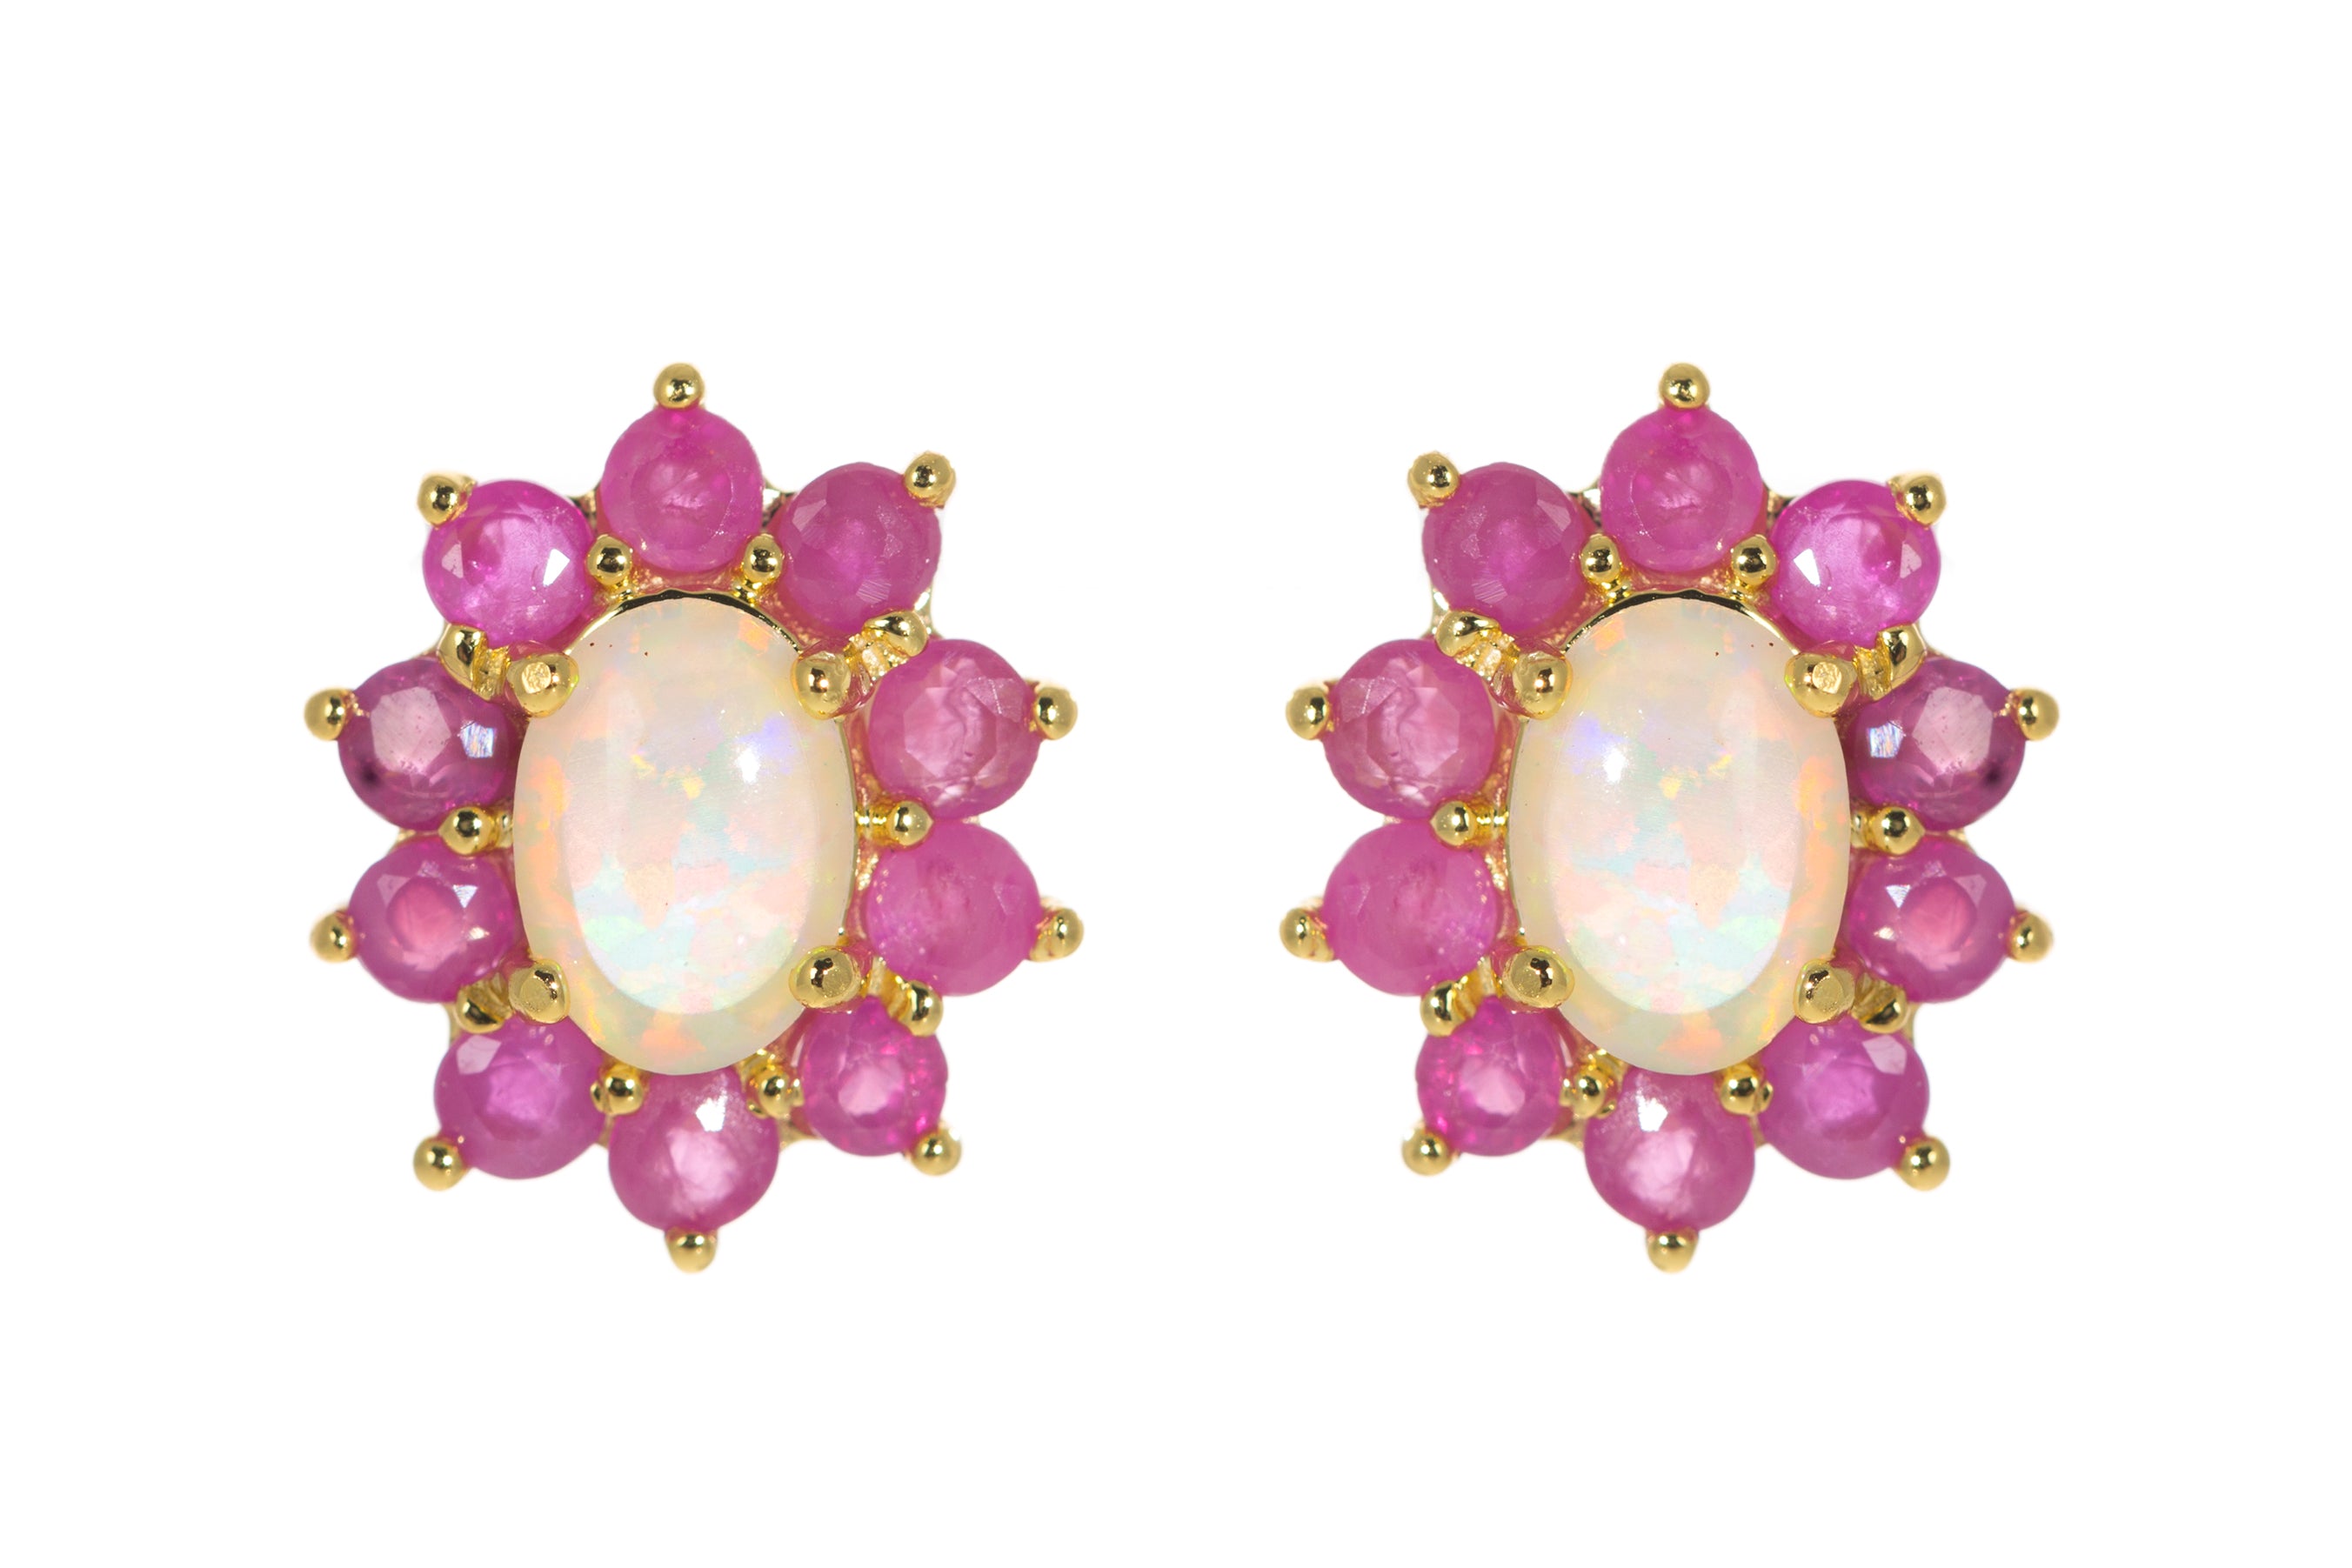 Royal ruby earrings